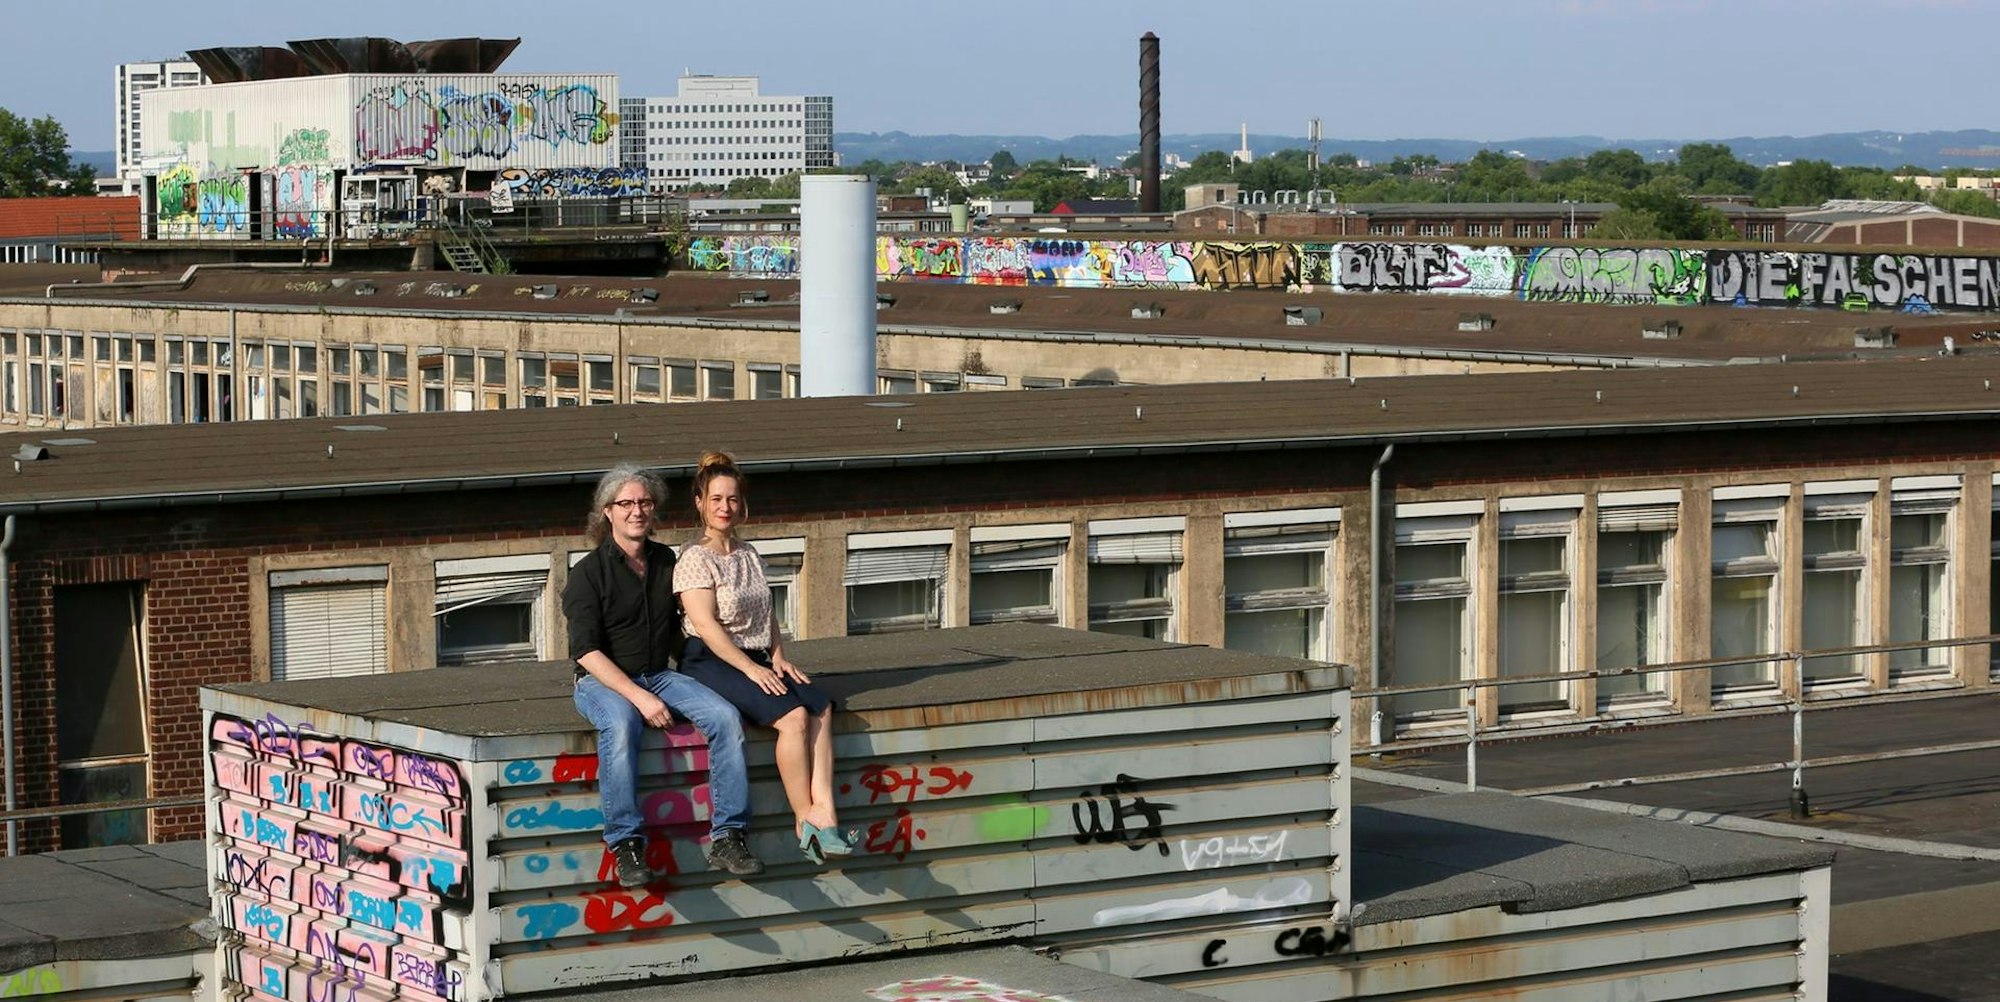 Marc Leßle (l.) und Anja Kolacek (r.) auf dem Dach der ehemaligen KHD-Hauptverwaltung; im Hintergrund Teile des riesigen Mülheimer Areals, aus dem ein neuer Stadtteil wird.